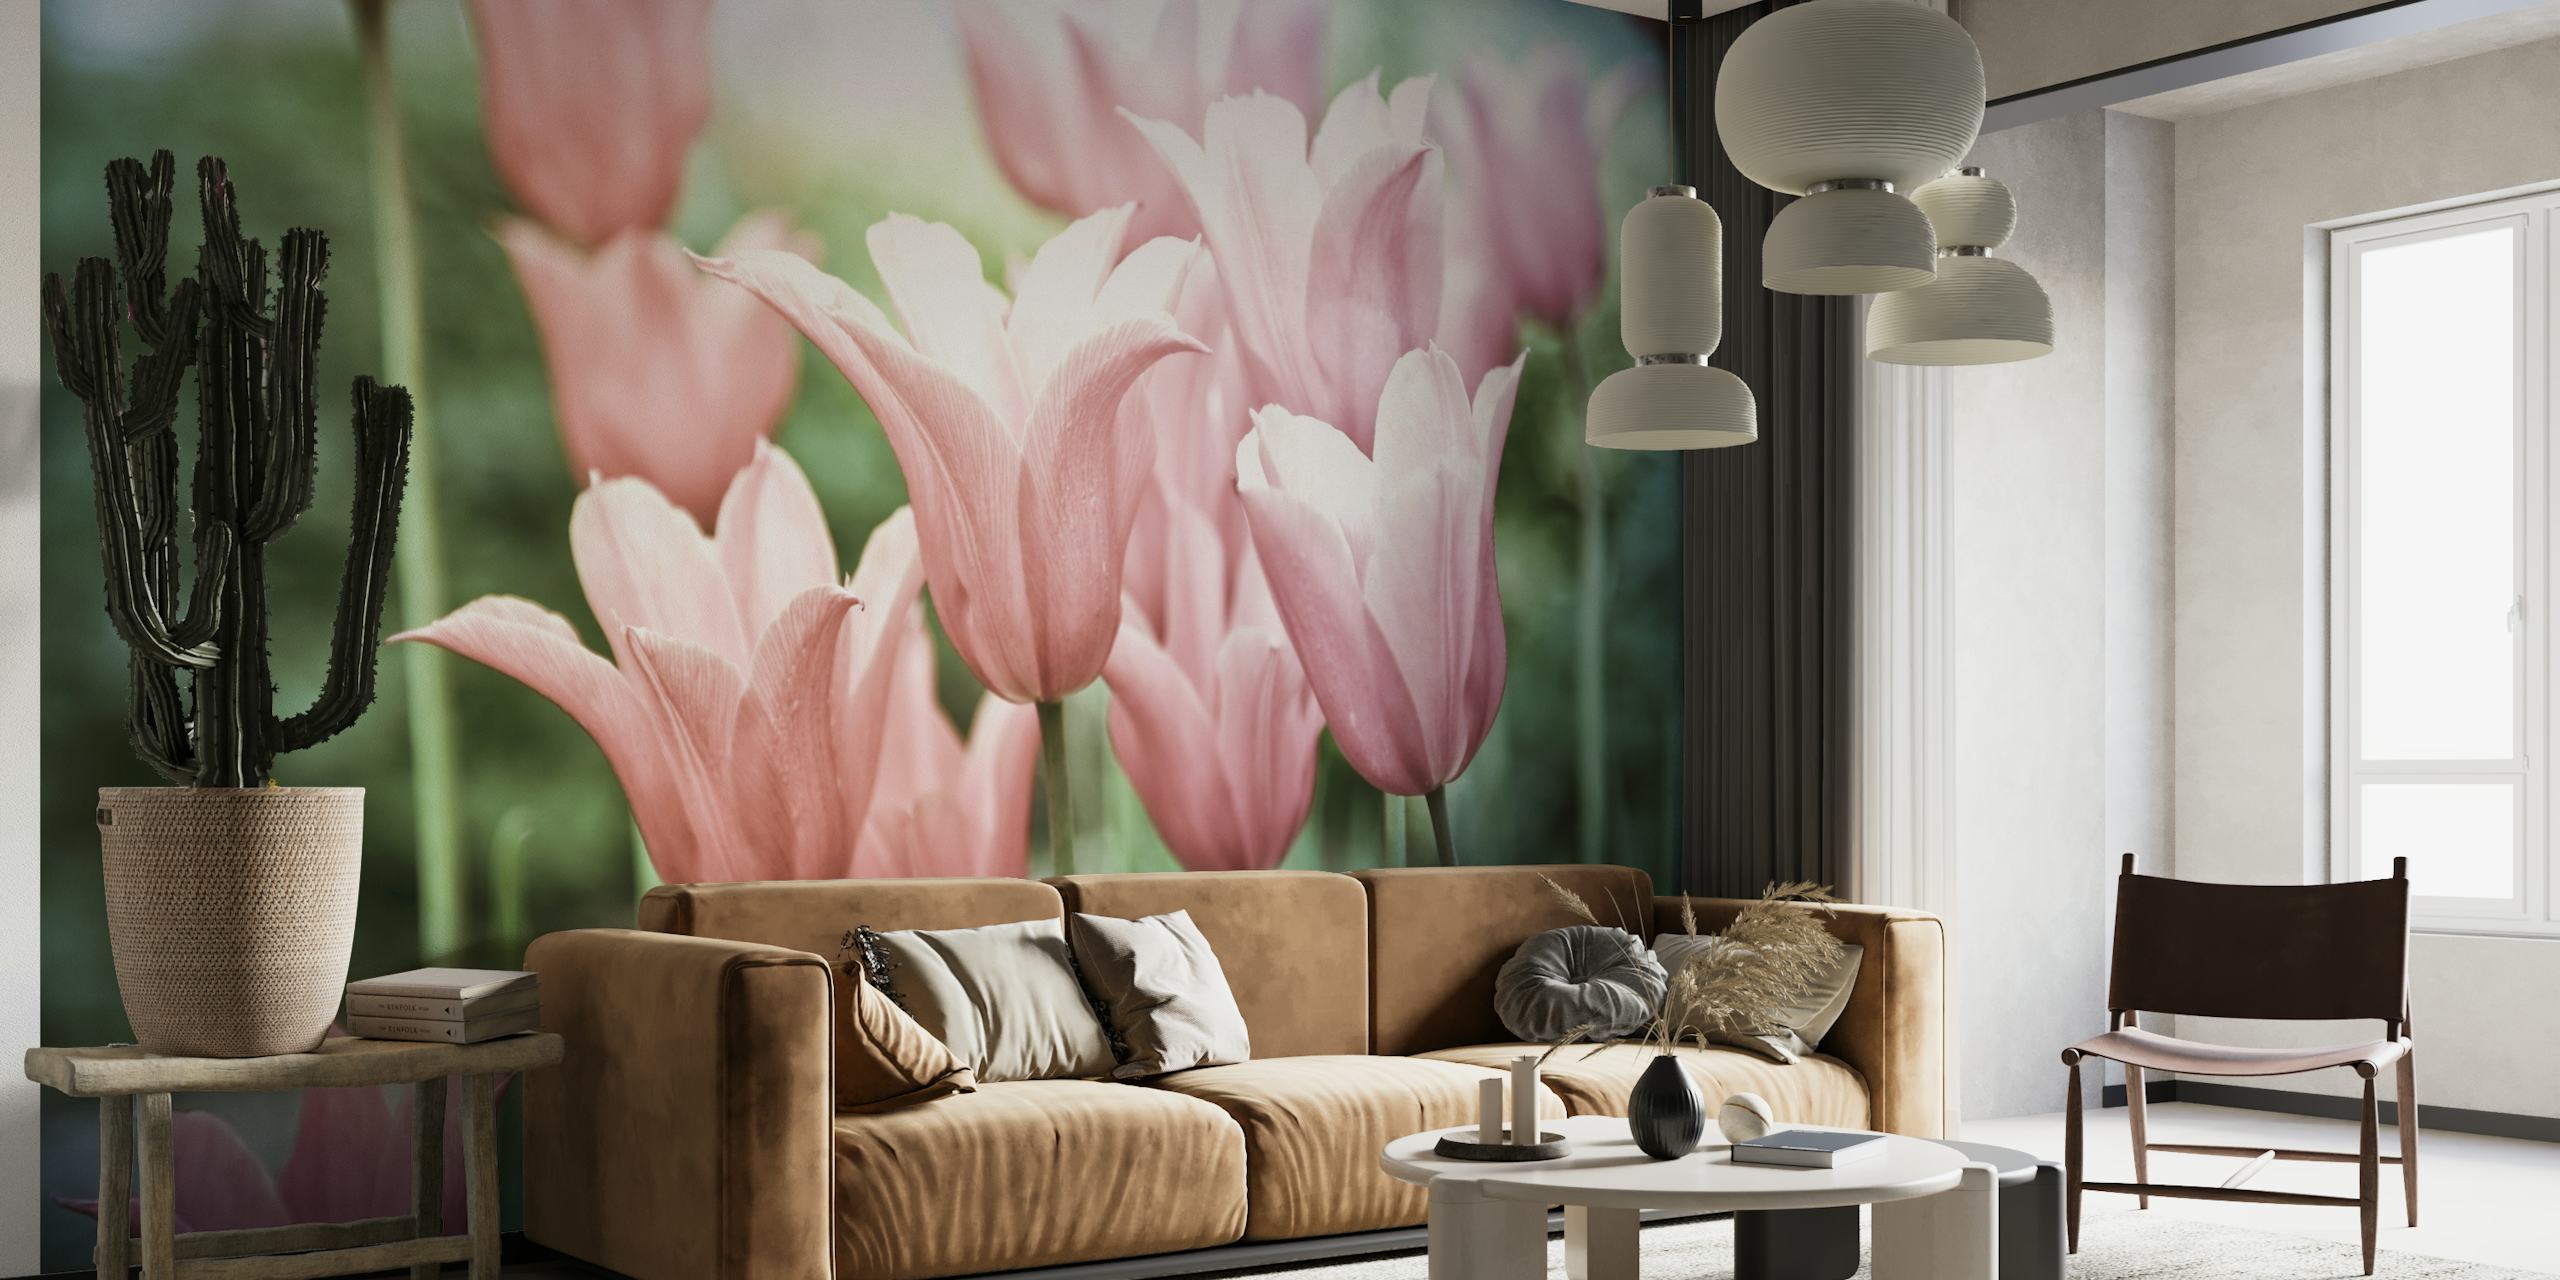 Beautiful Tulips papel pintado